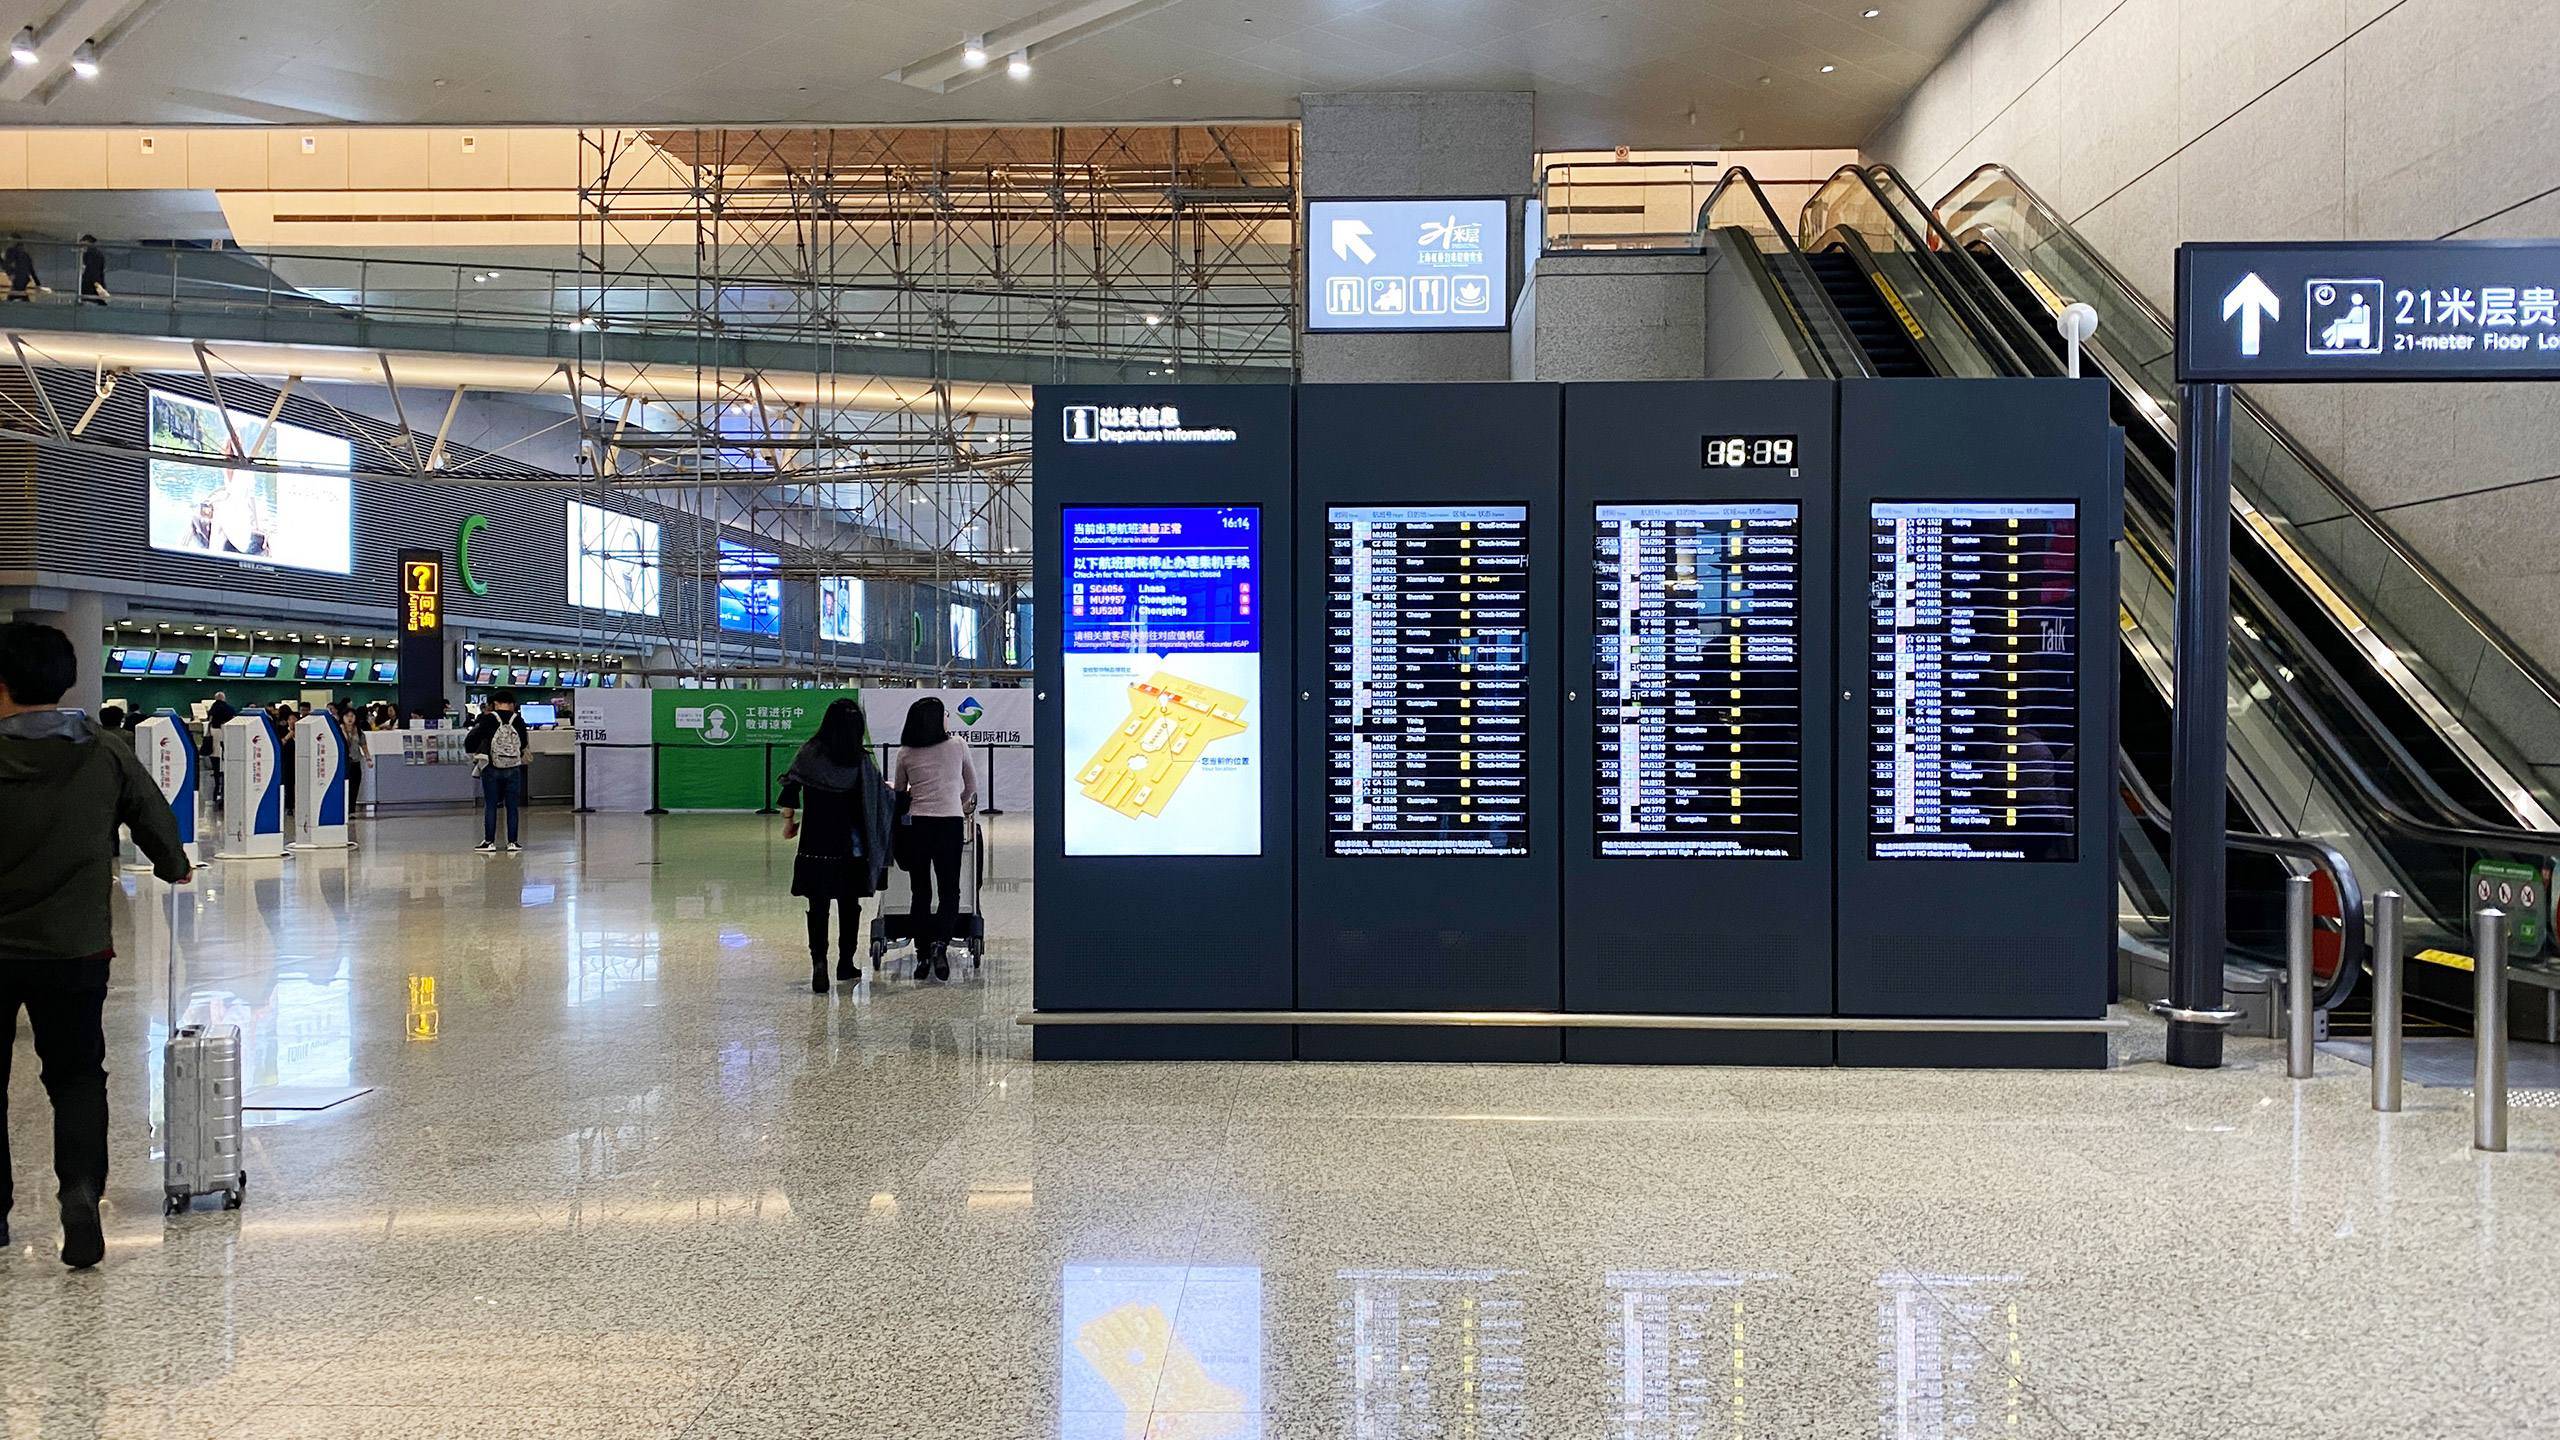 机场高铁站地铁站立式双屏液晶广告刷屏机的案例分析容盛兴达品牌